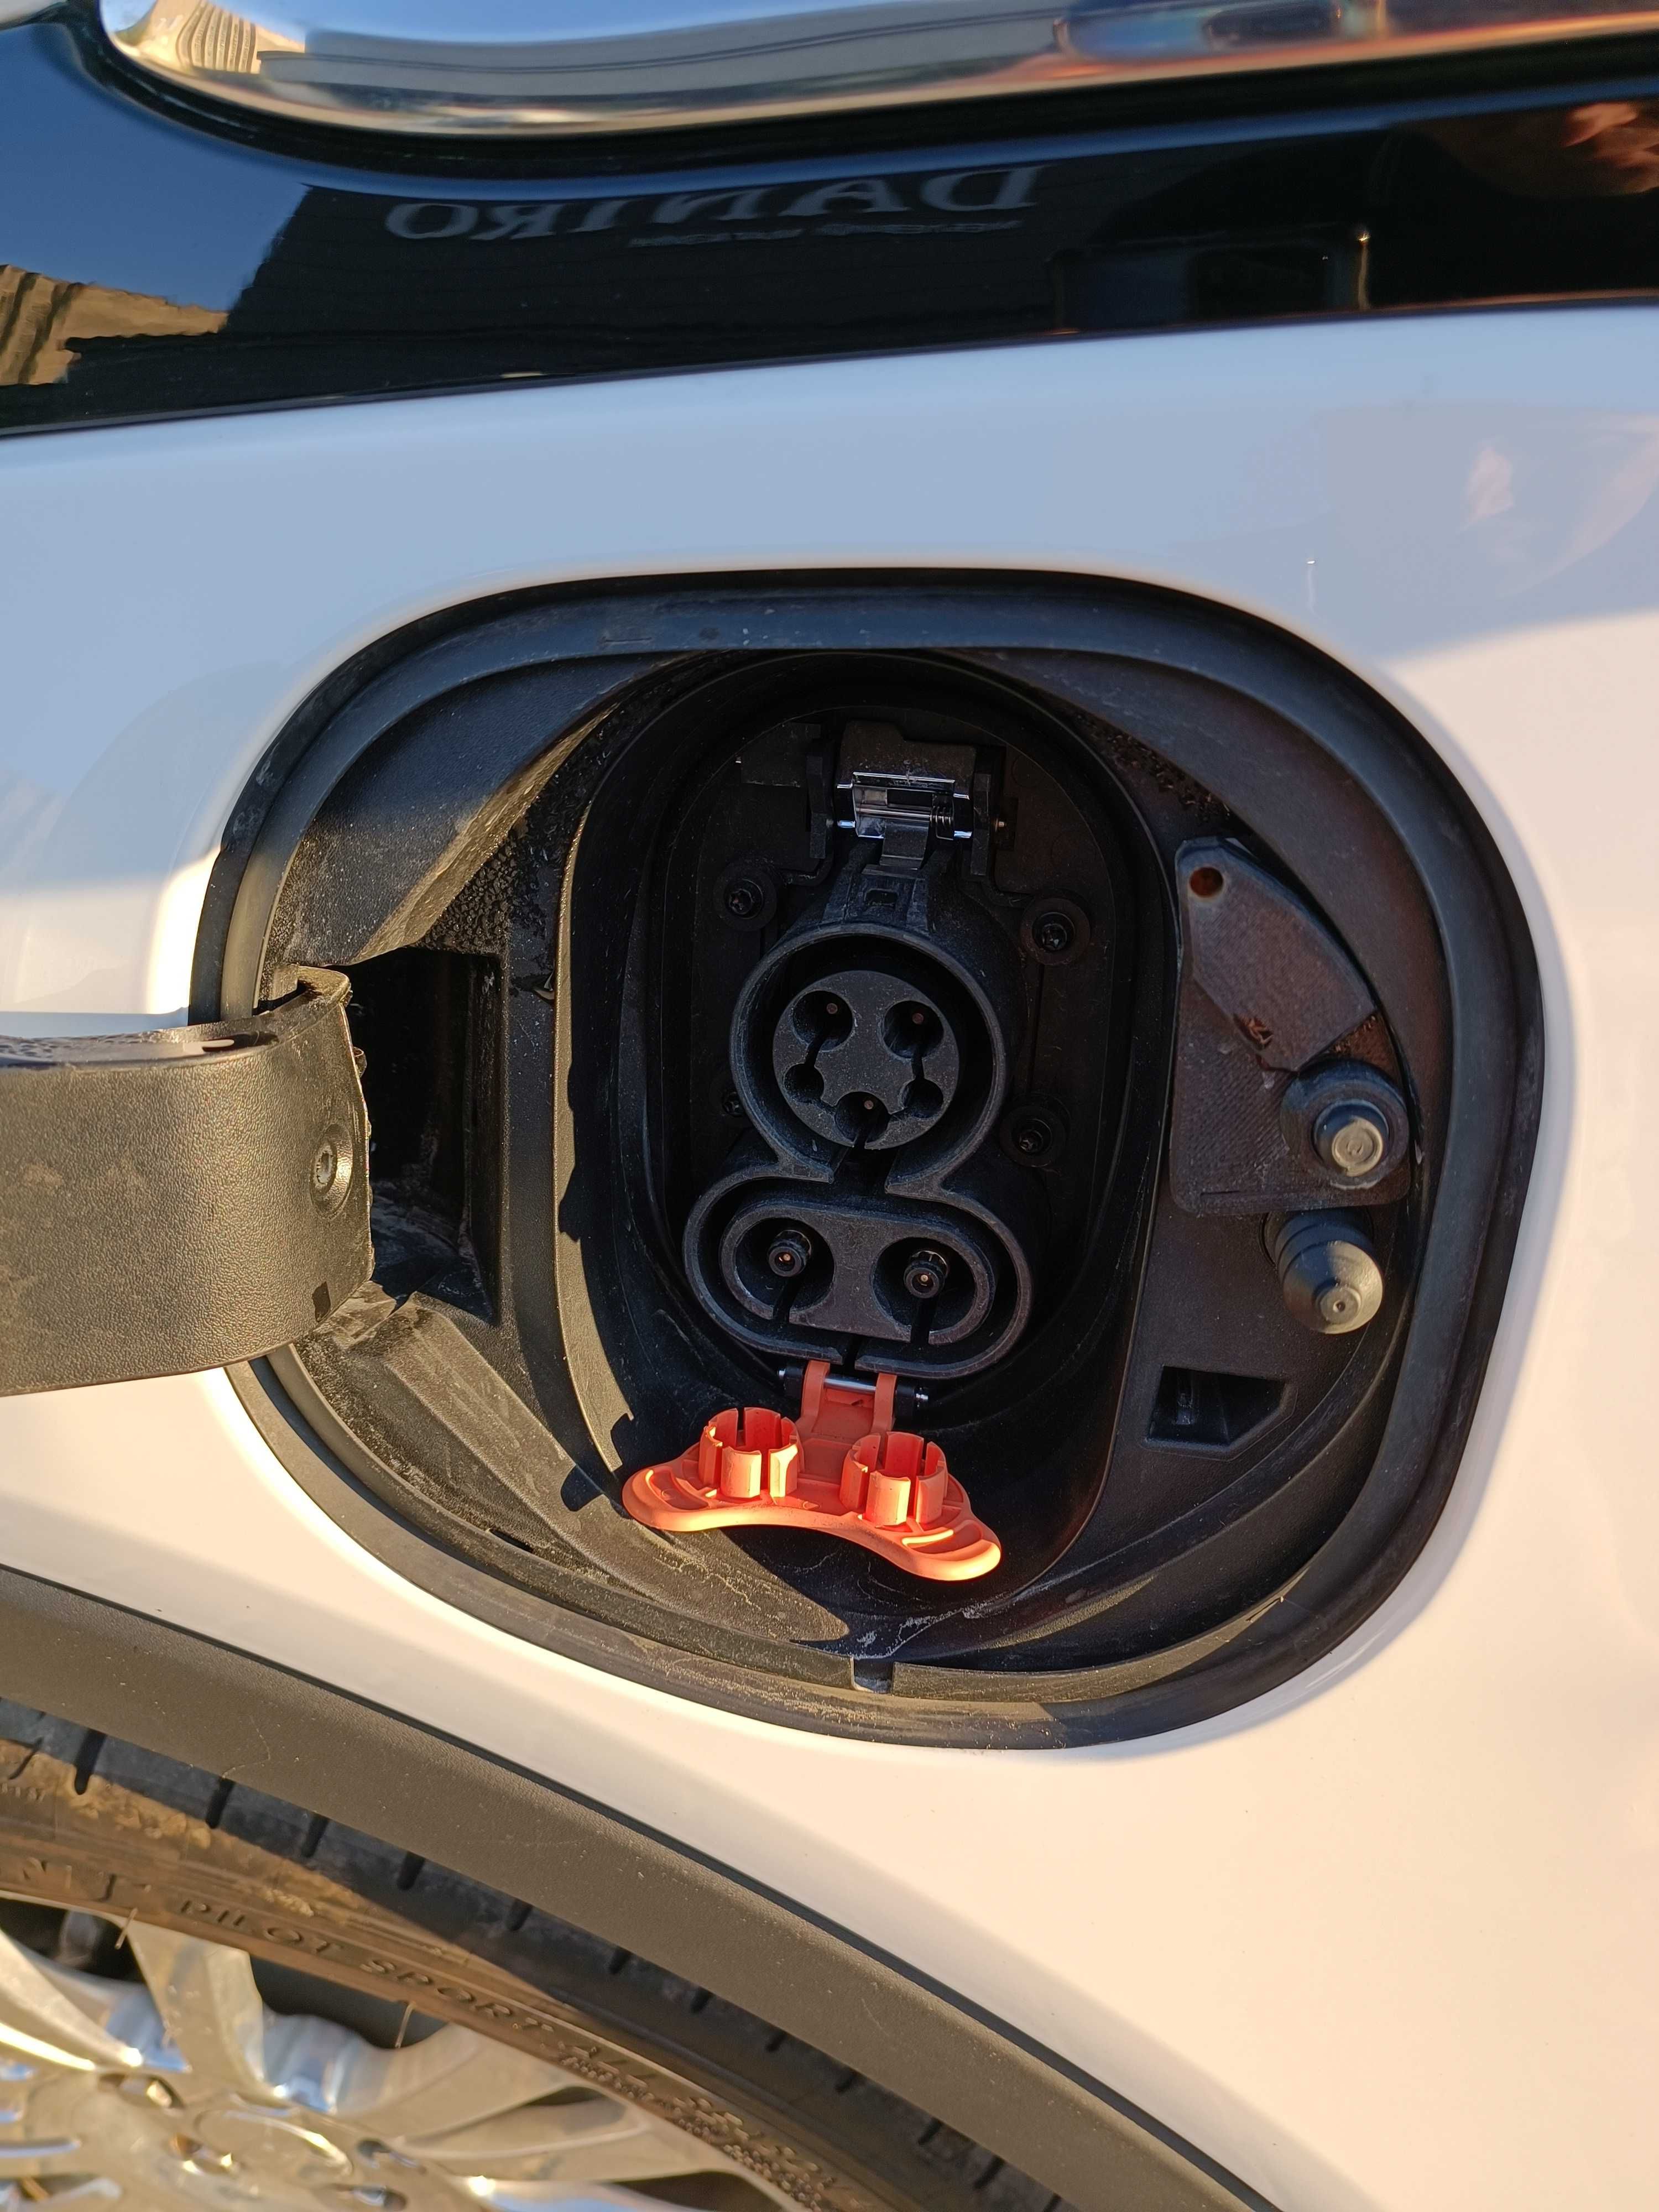 Chevrolet Bolt EV 2020р, 64 кВт ідеальне сімейне авто